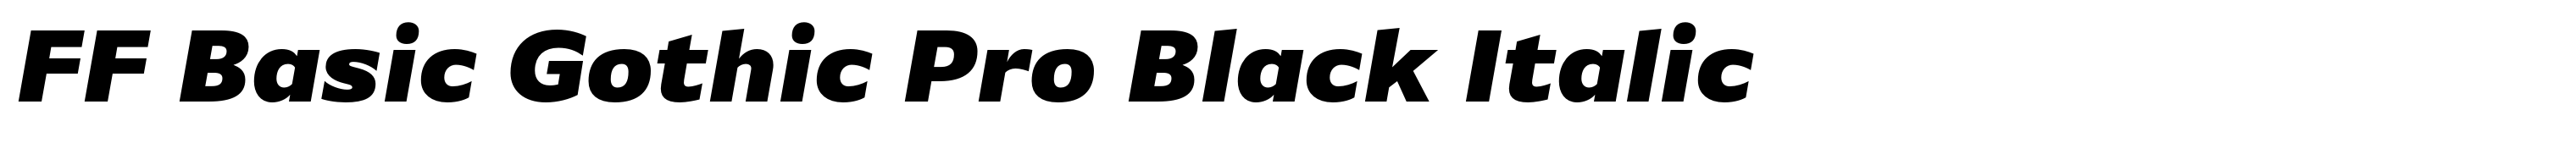 FF Basic Gothic Pro Black Italic